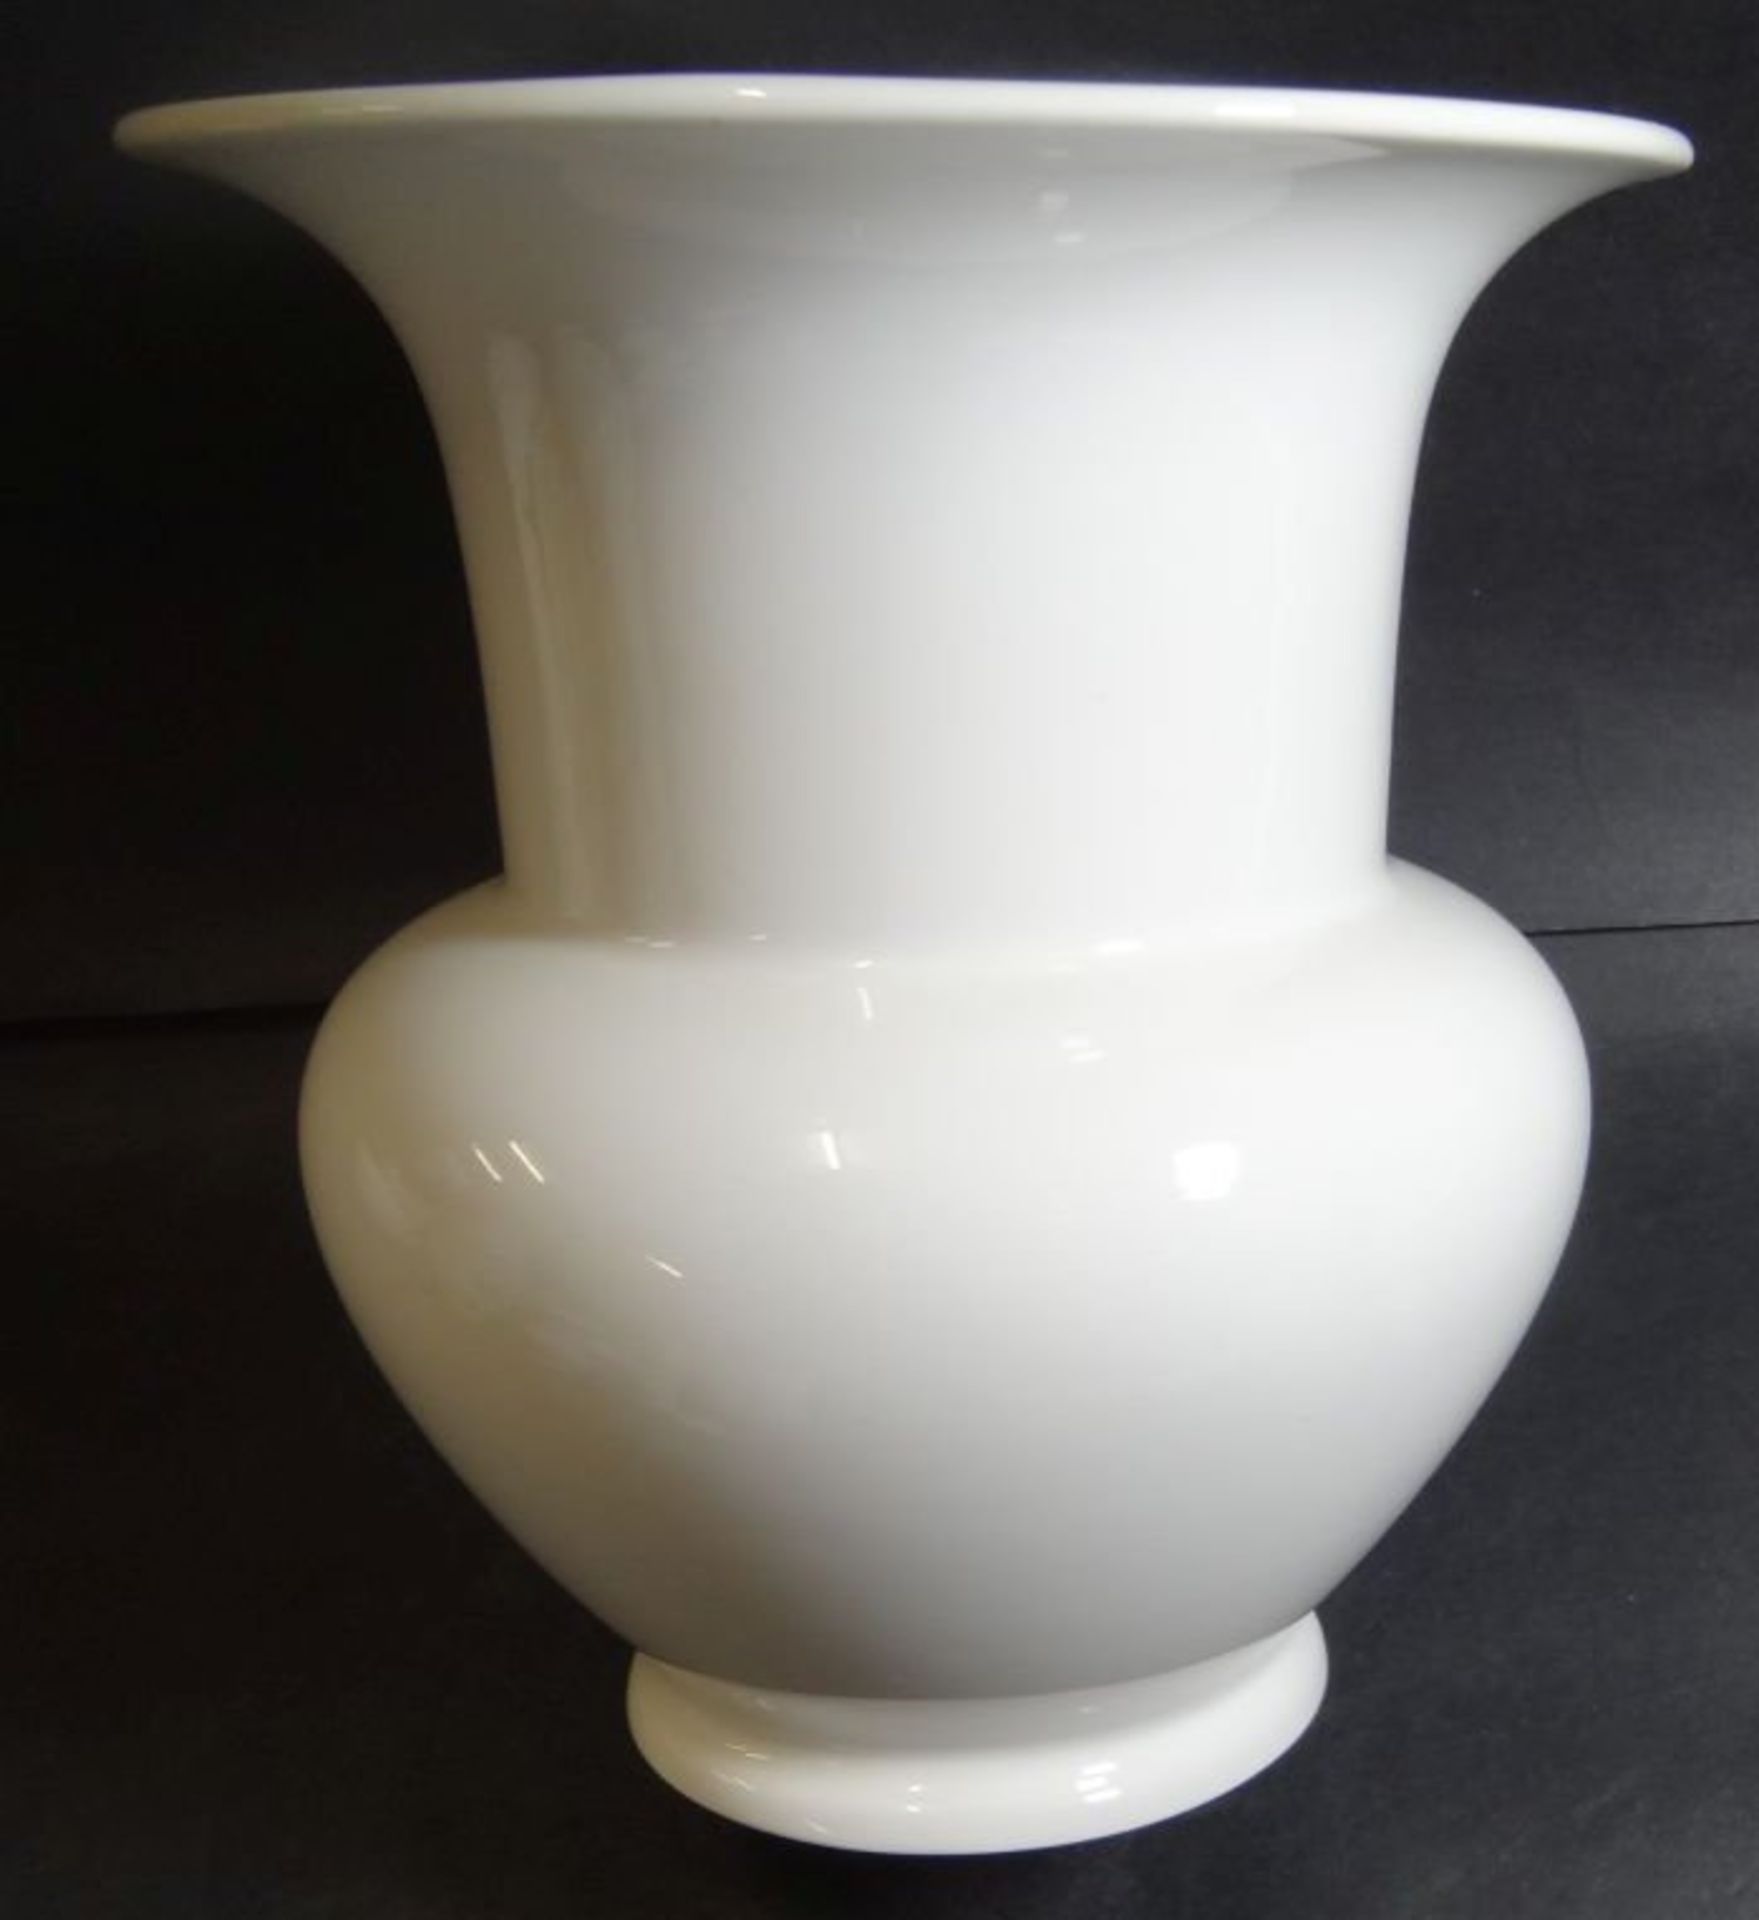 Vase "KPM" Berlin, weiss, H-19 cm, D-16 cm- - -22.61 % buyer's premium on the hammer priceVAT margin - Bild 3 aus 4